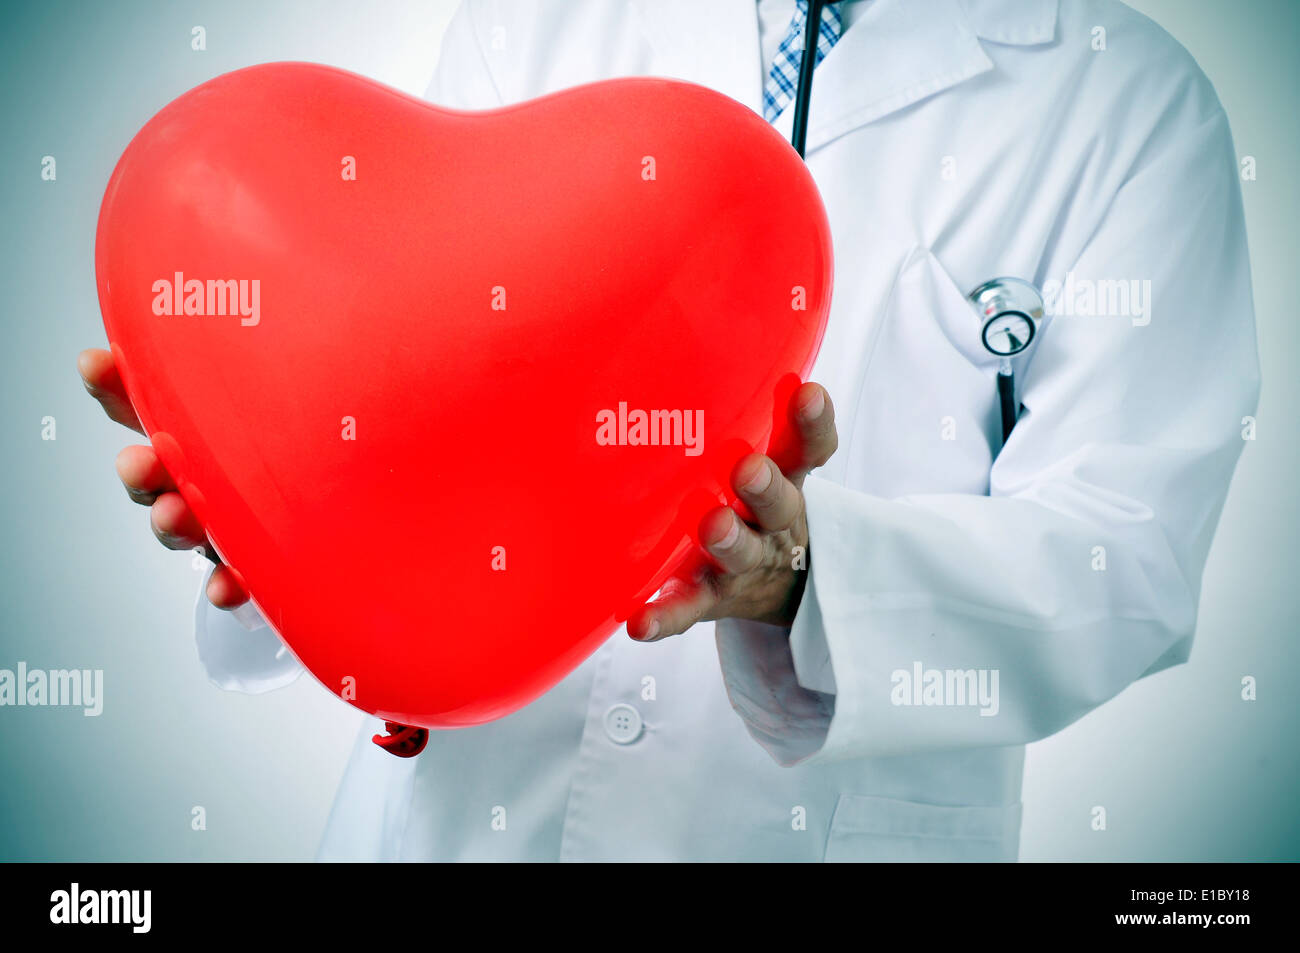 Un medico in possesso di un cuore rosso a forma di palloncino, che simboleggia la medicina cardiovascolare Foto Stock